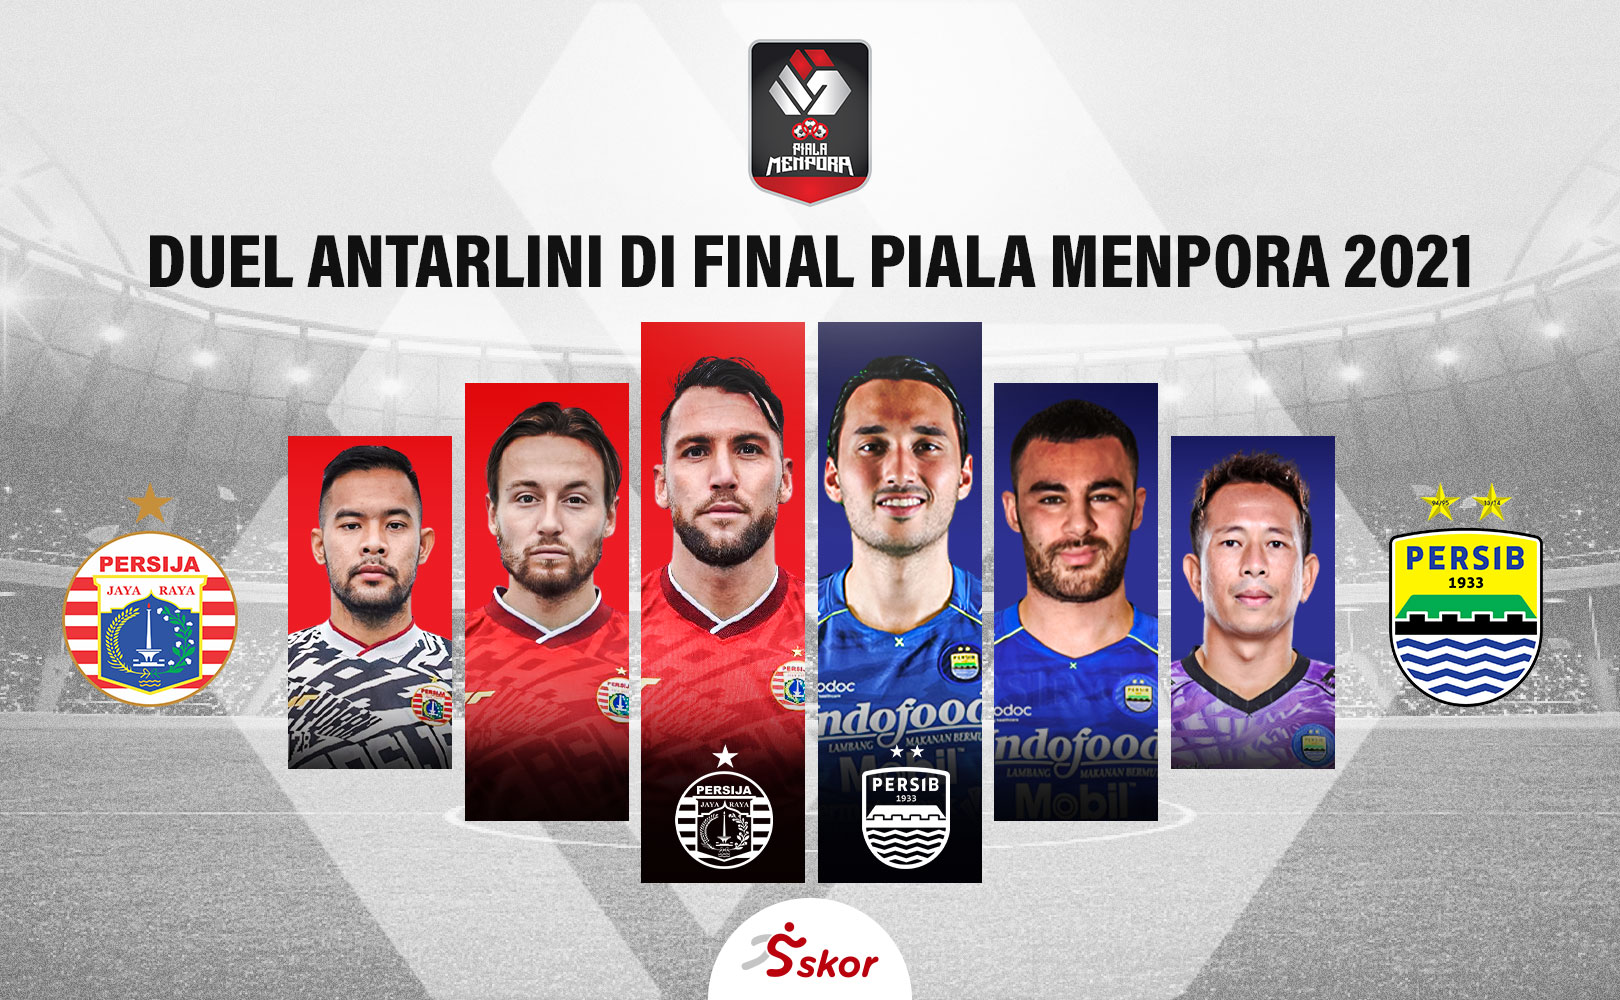 Final Piala Menpora 2021: Duel Antarlini Persija Jakarta vs Persib Bandung